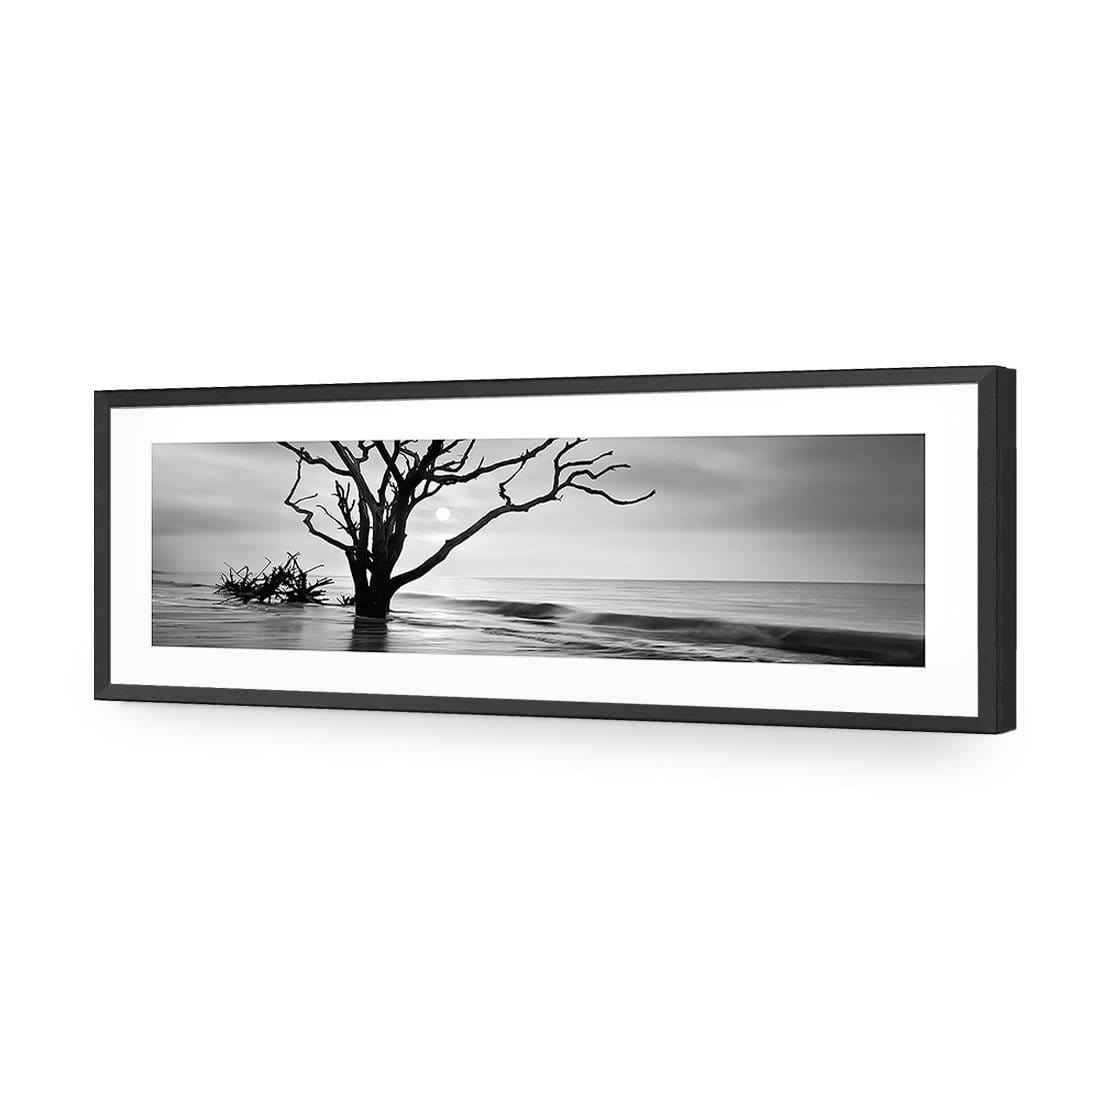 Botany Bay Sunrise, Black and White (Long) - wallart-australia - Acrylic Glass With Border